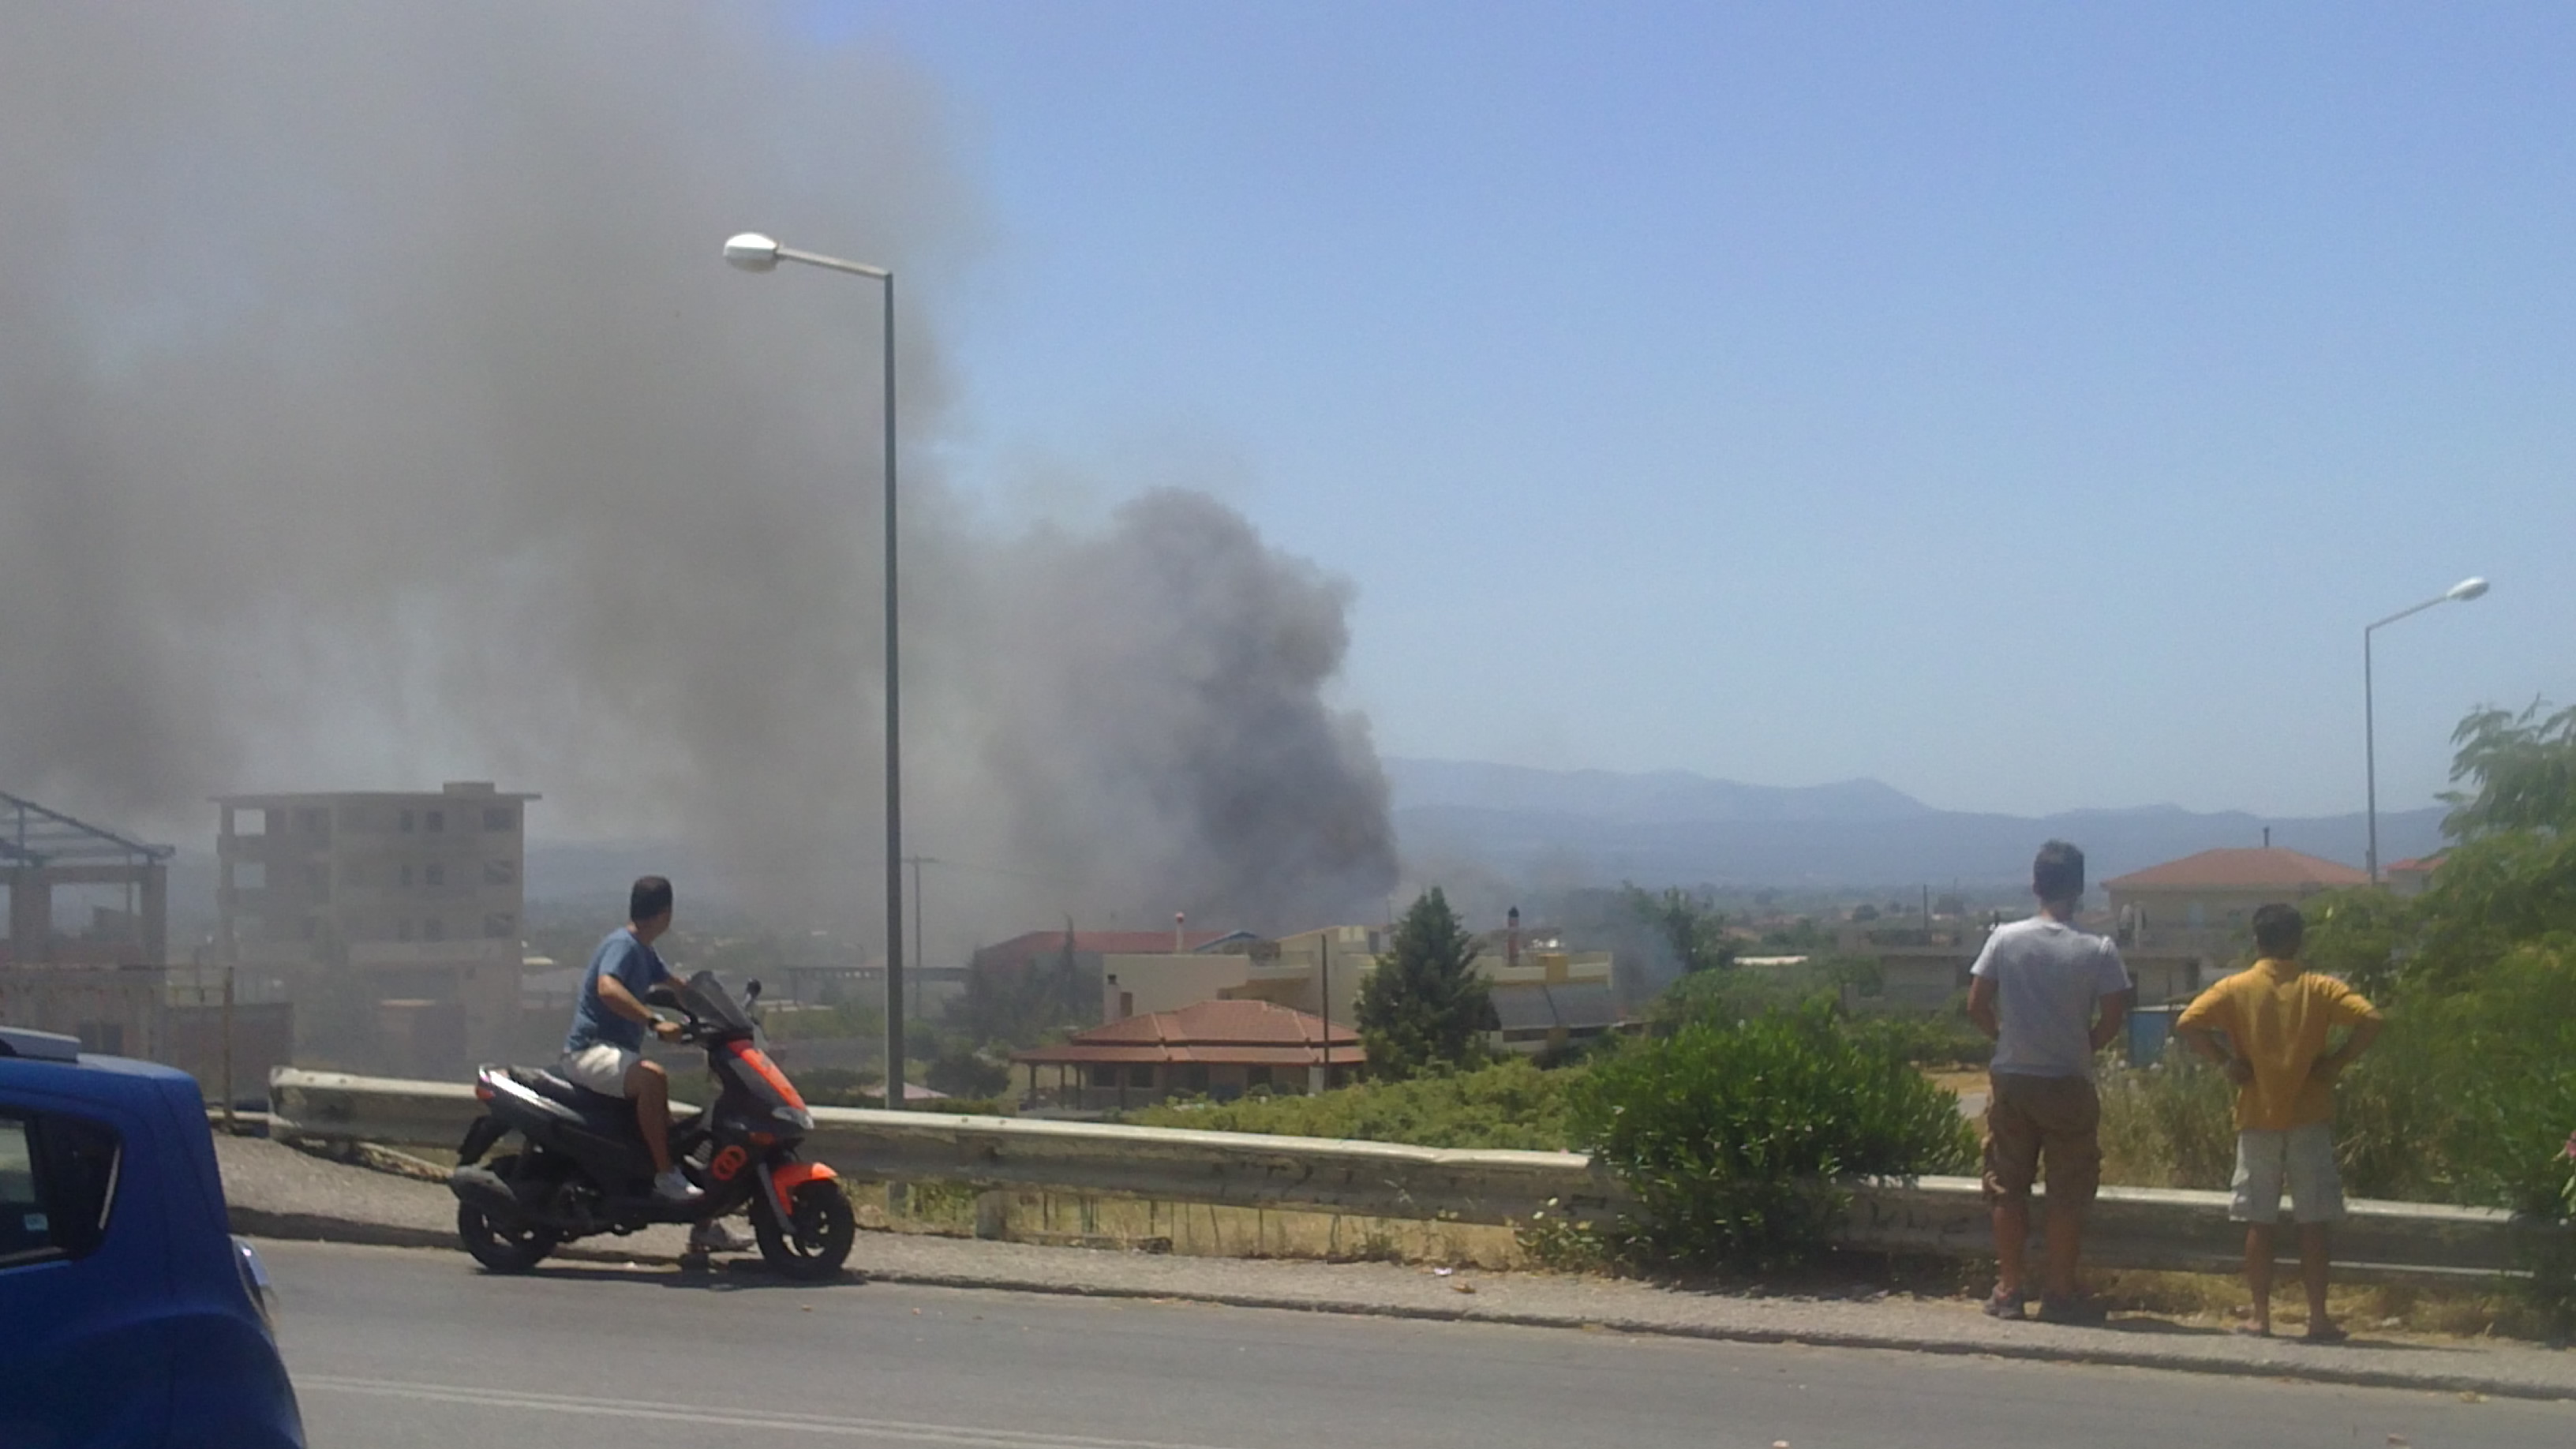 Φωτιά σε κατοικημένη περιοχή στο Αγρίνιο (φωτο)